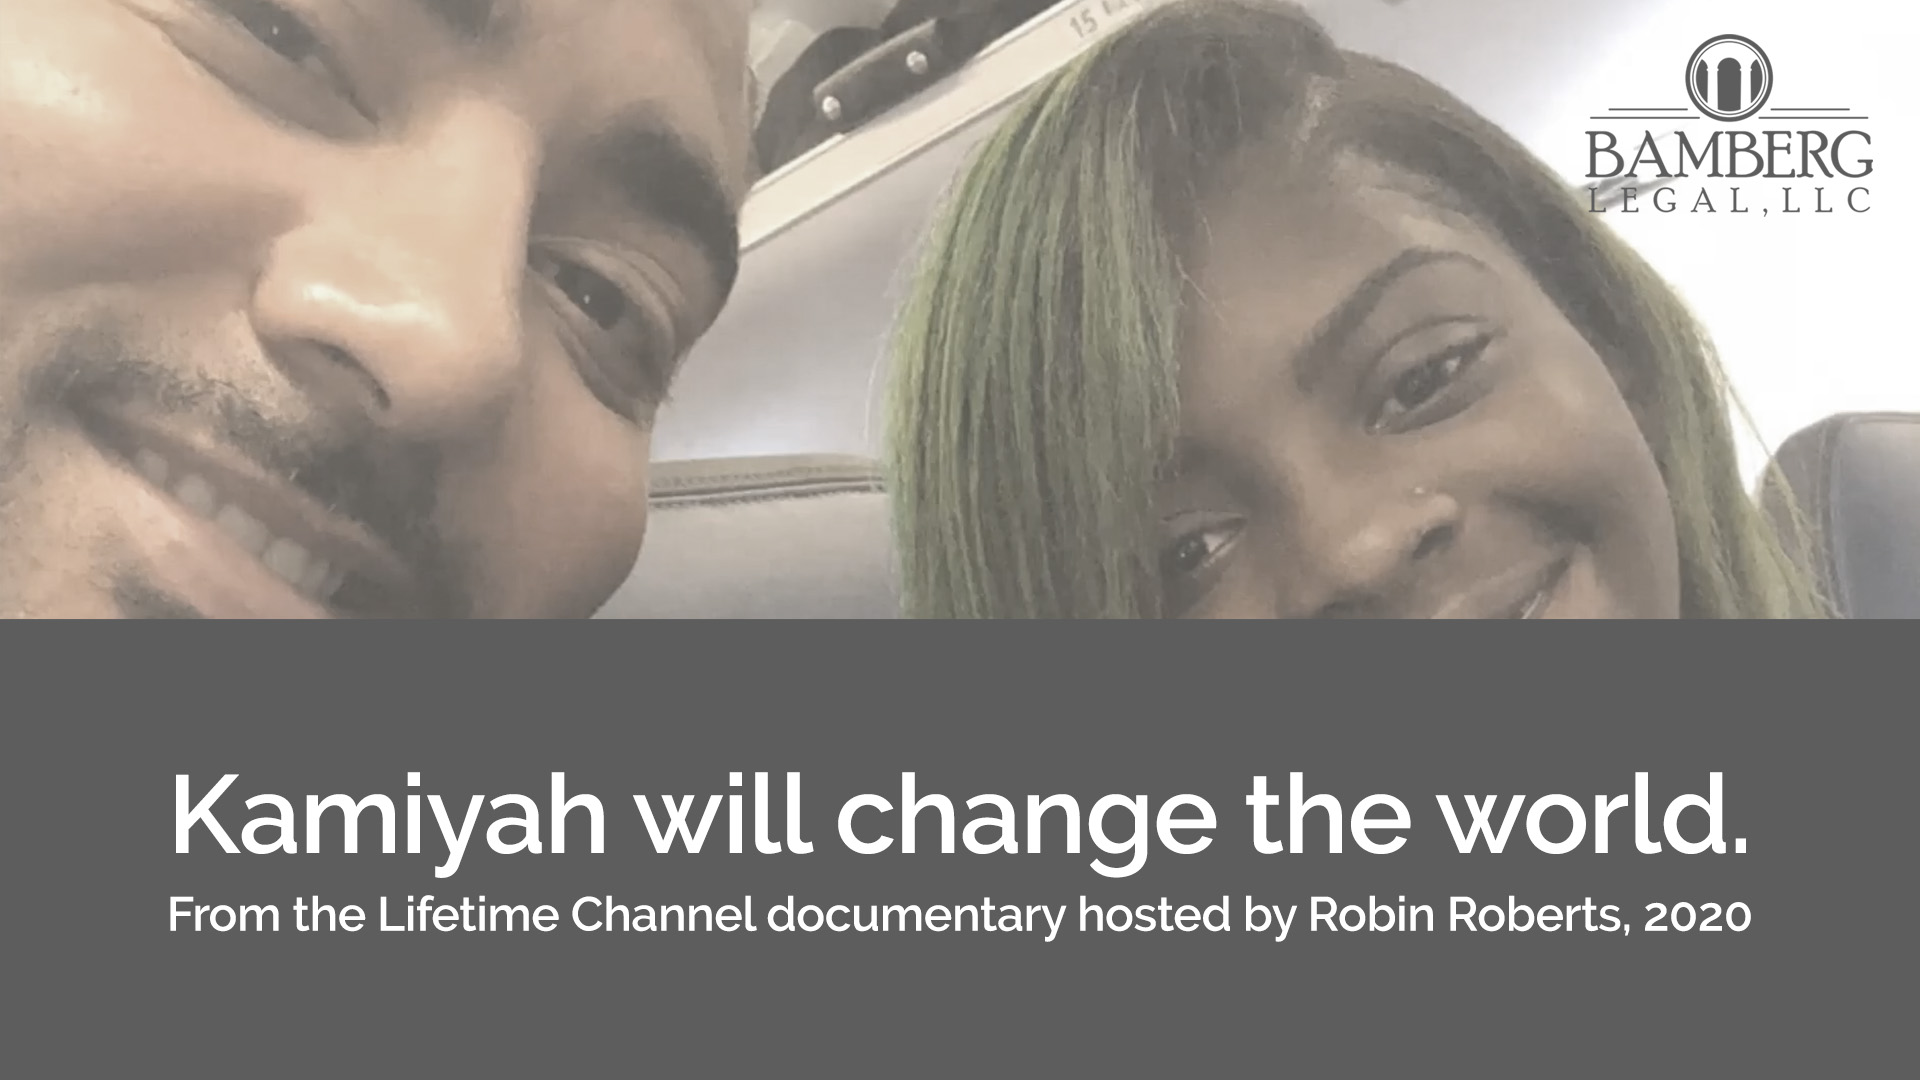 KAMIYAH WILL CHANGE THE WORLD